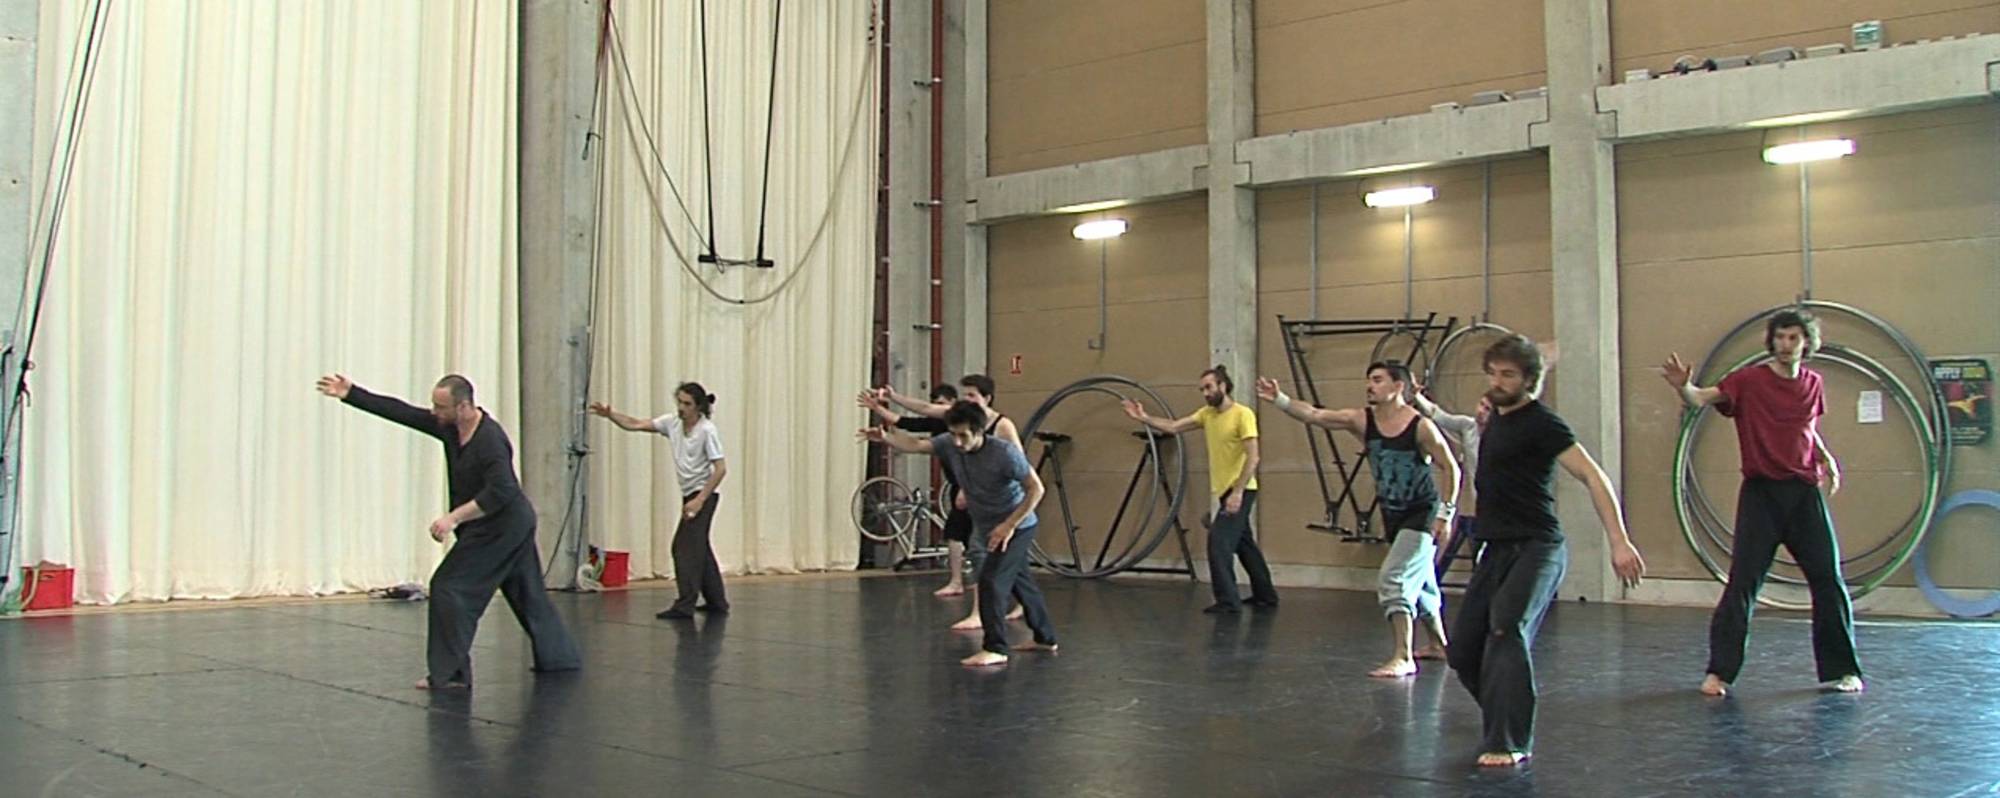 法國國家馬戲藝術中心「專業人才培訓系列」- 融合雜技、特技、馬戲與舞蹈創作應用培訓營